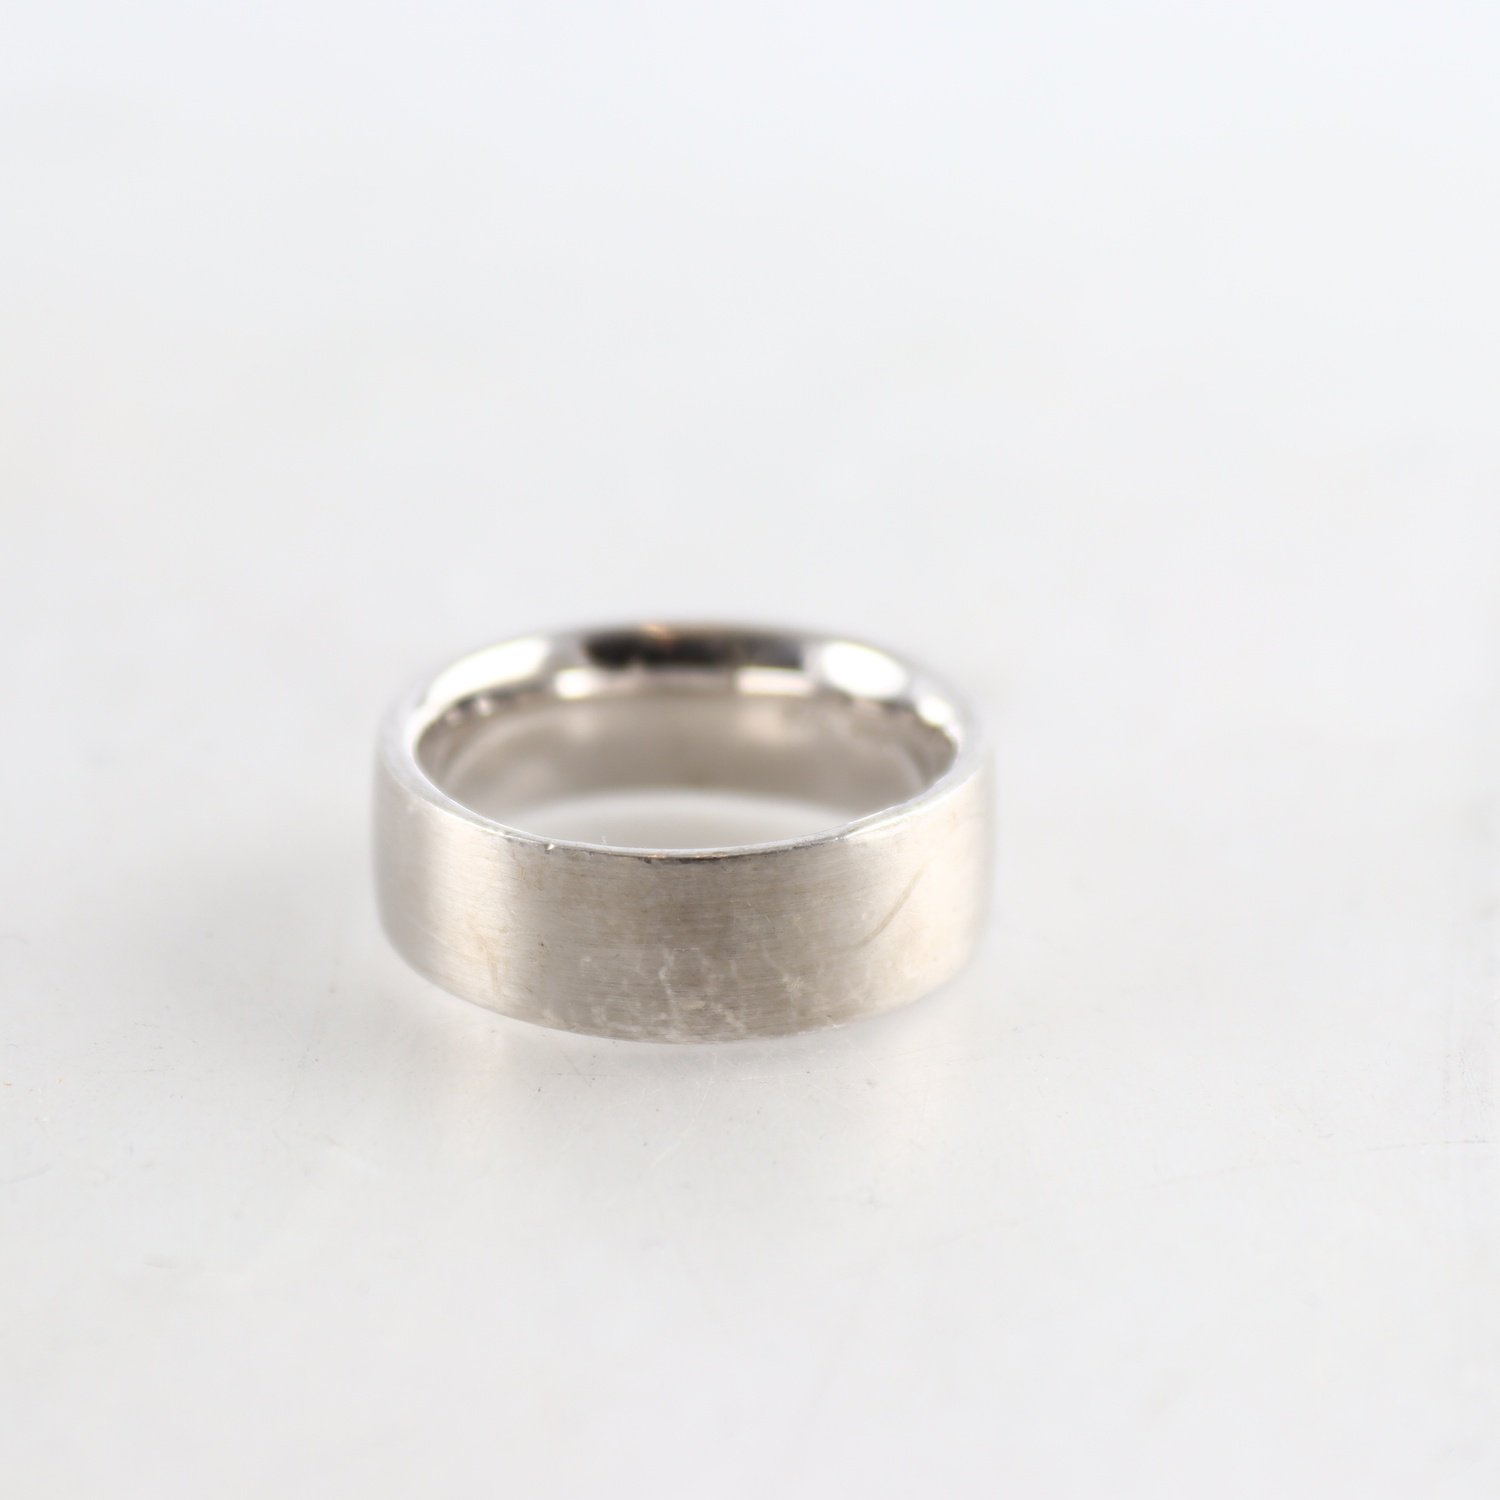 Ring, silver 925, slät, vikt: 12,2 g